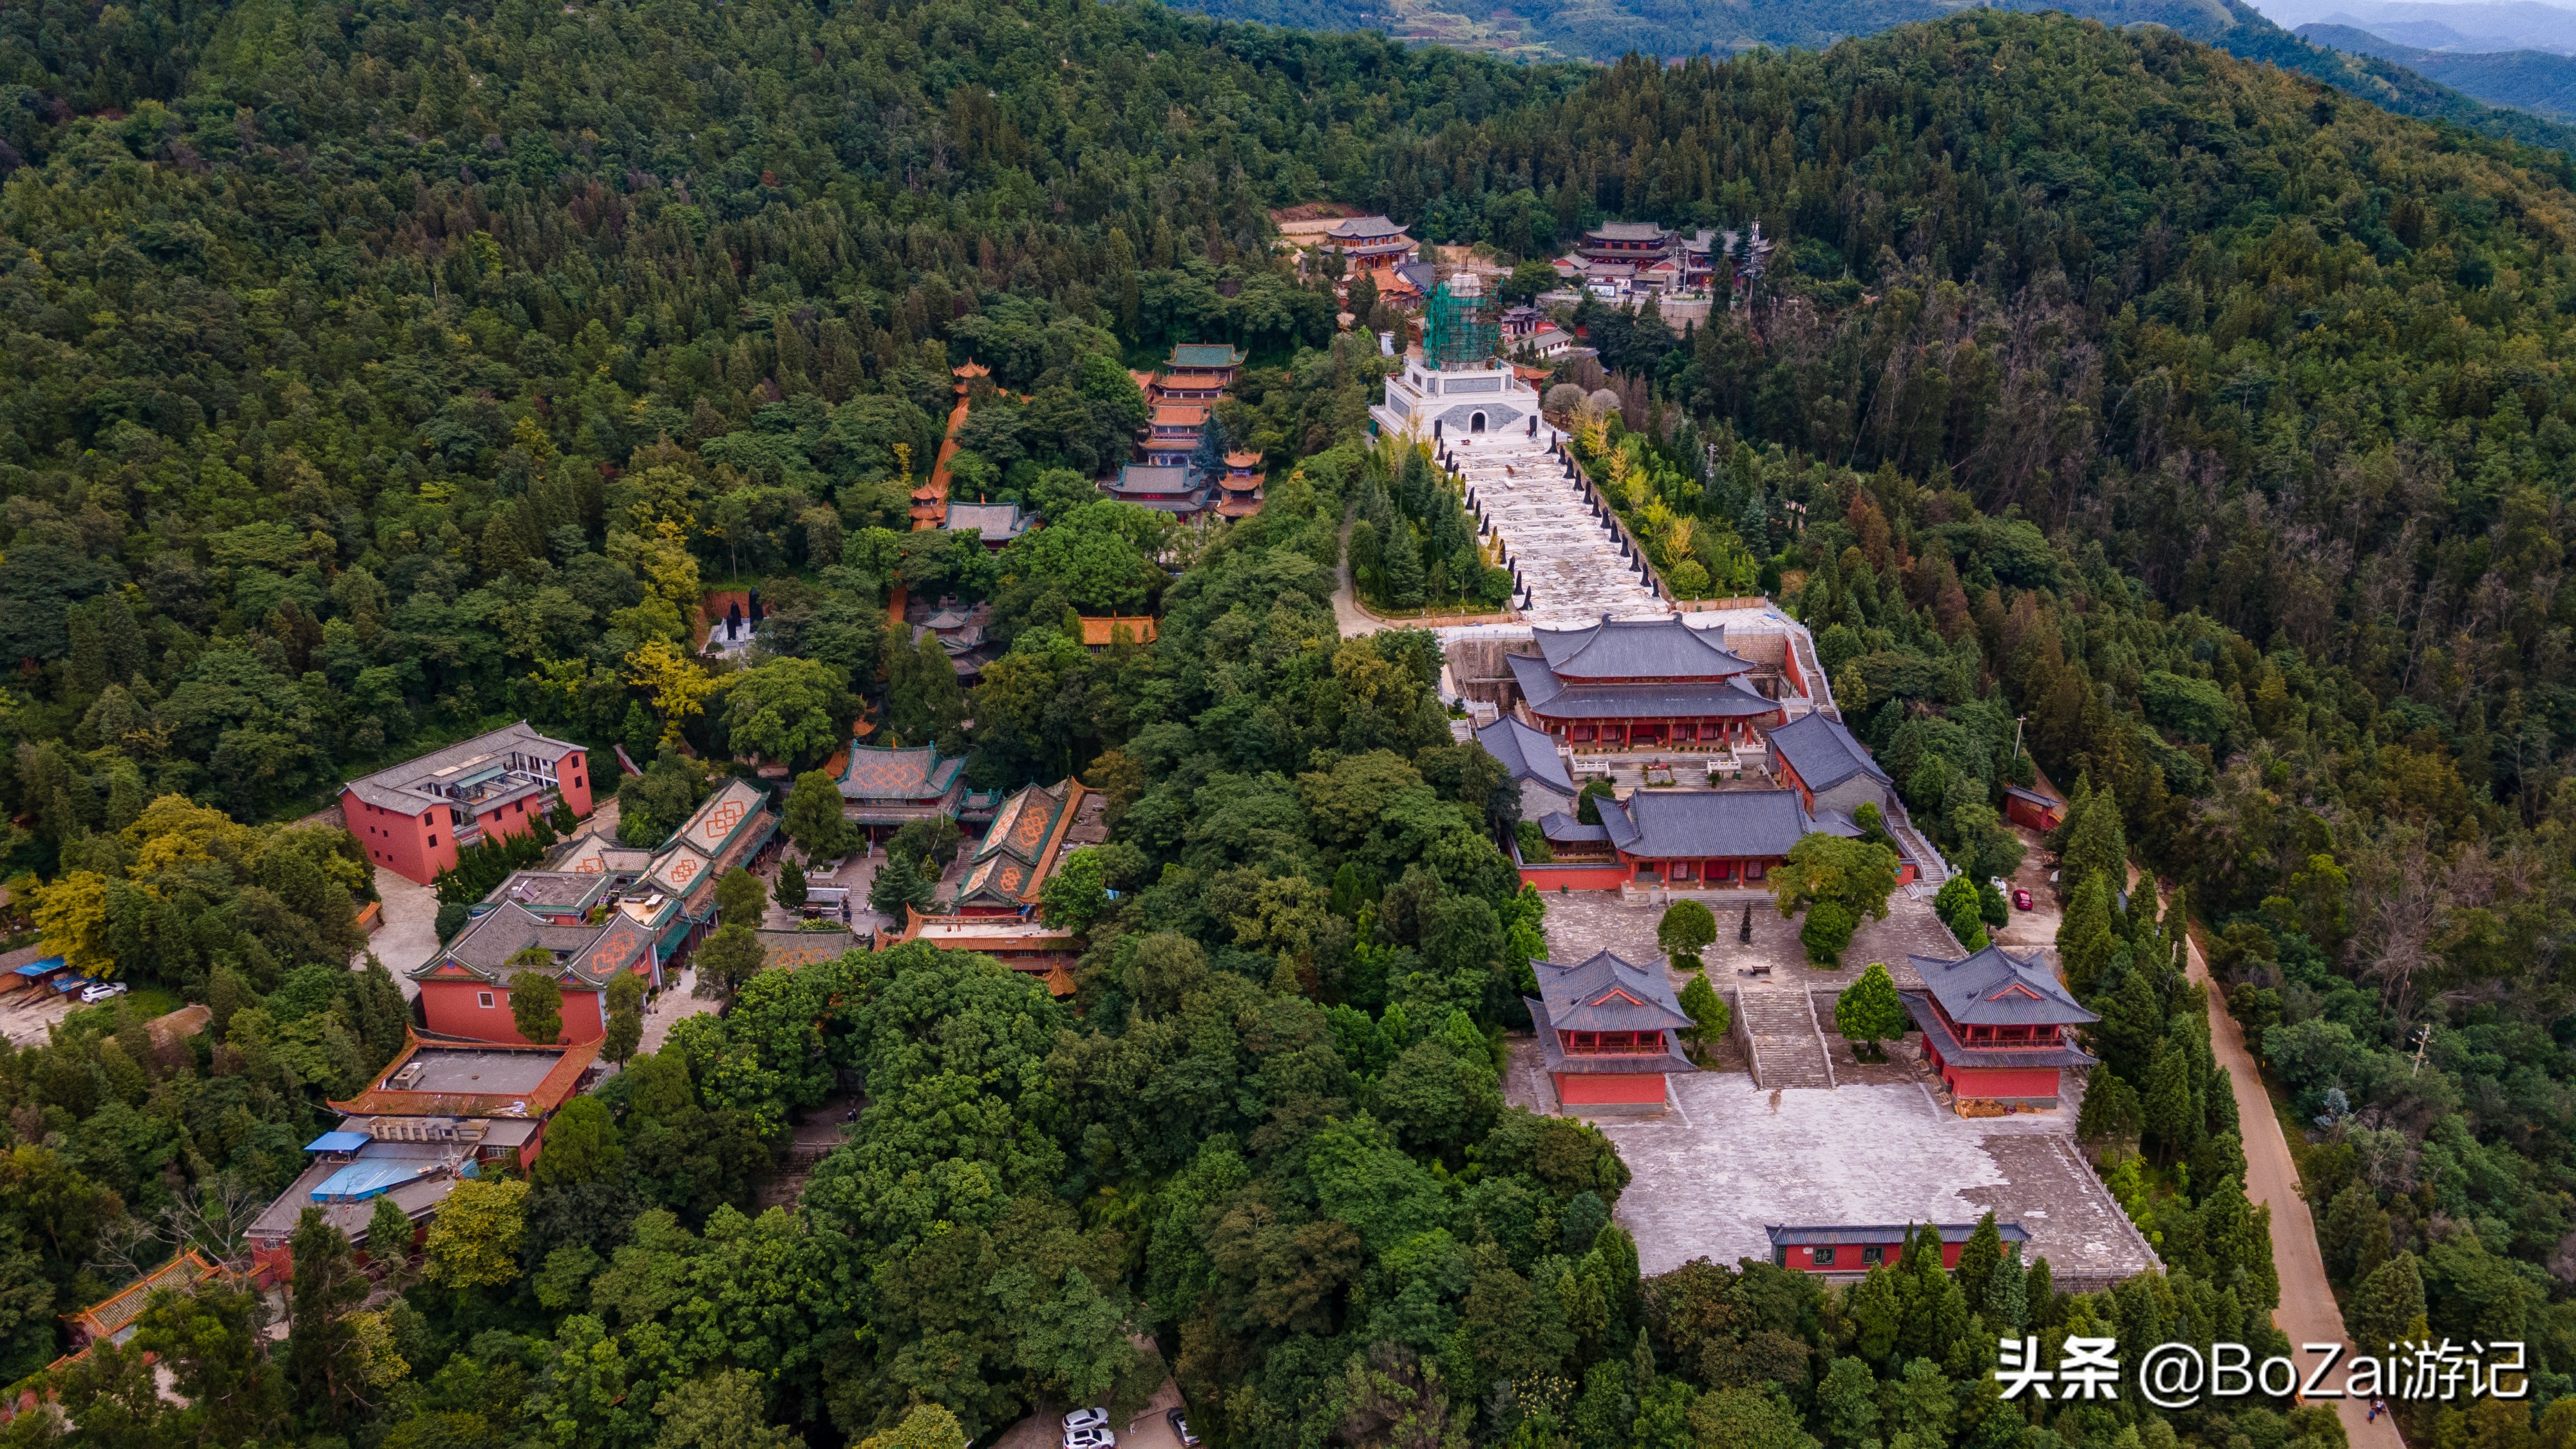 盘龙寺位于昆明市晋宁县滇池东岸盘龙山上,是昆明香火最旺的寺院之一